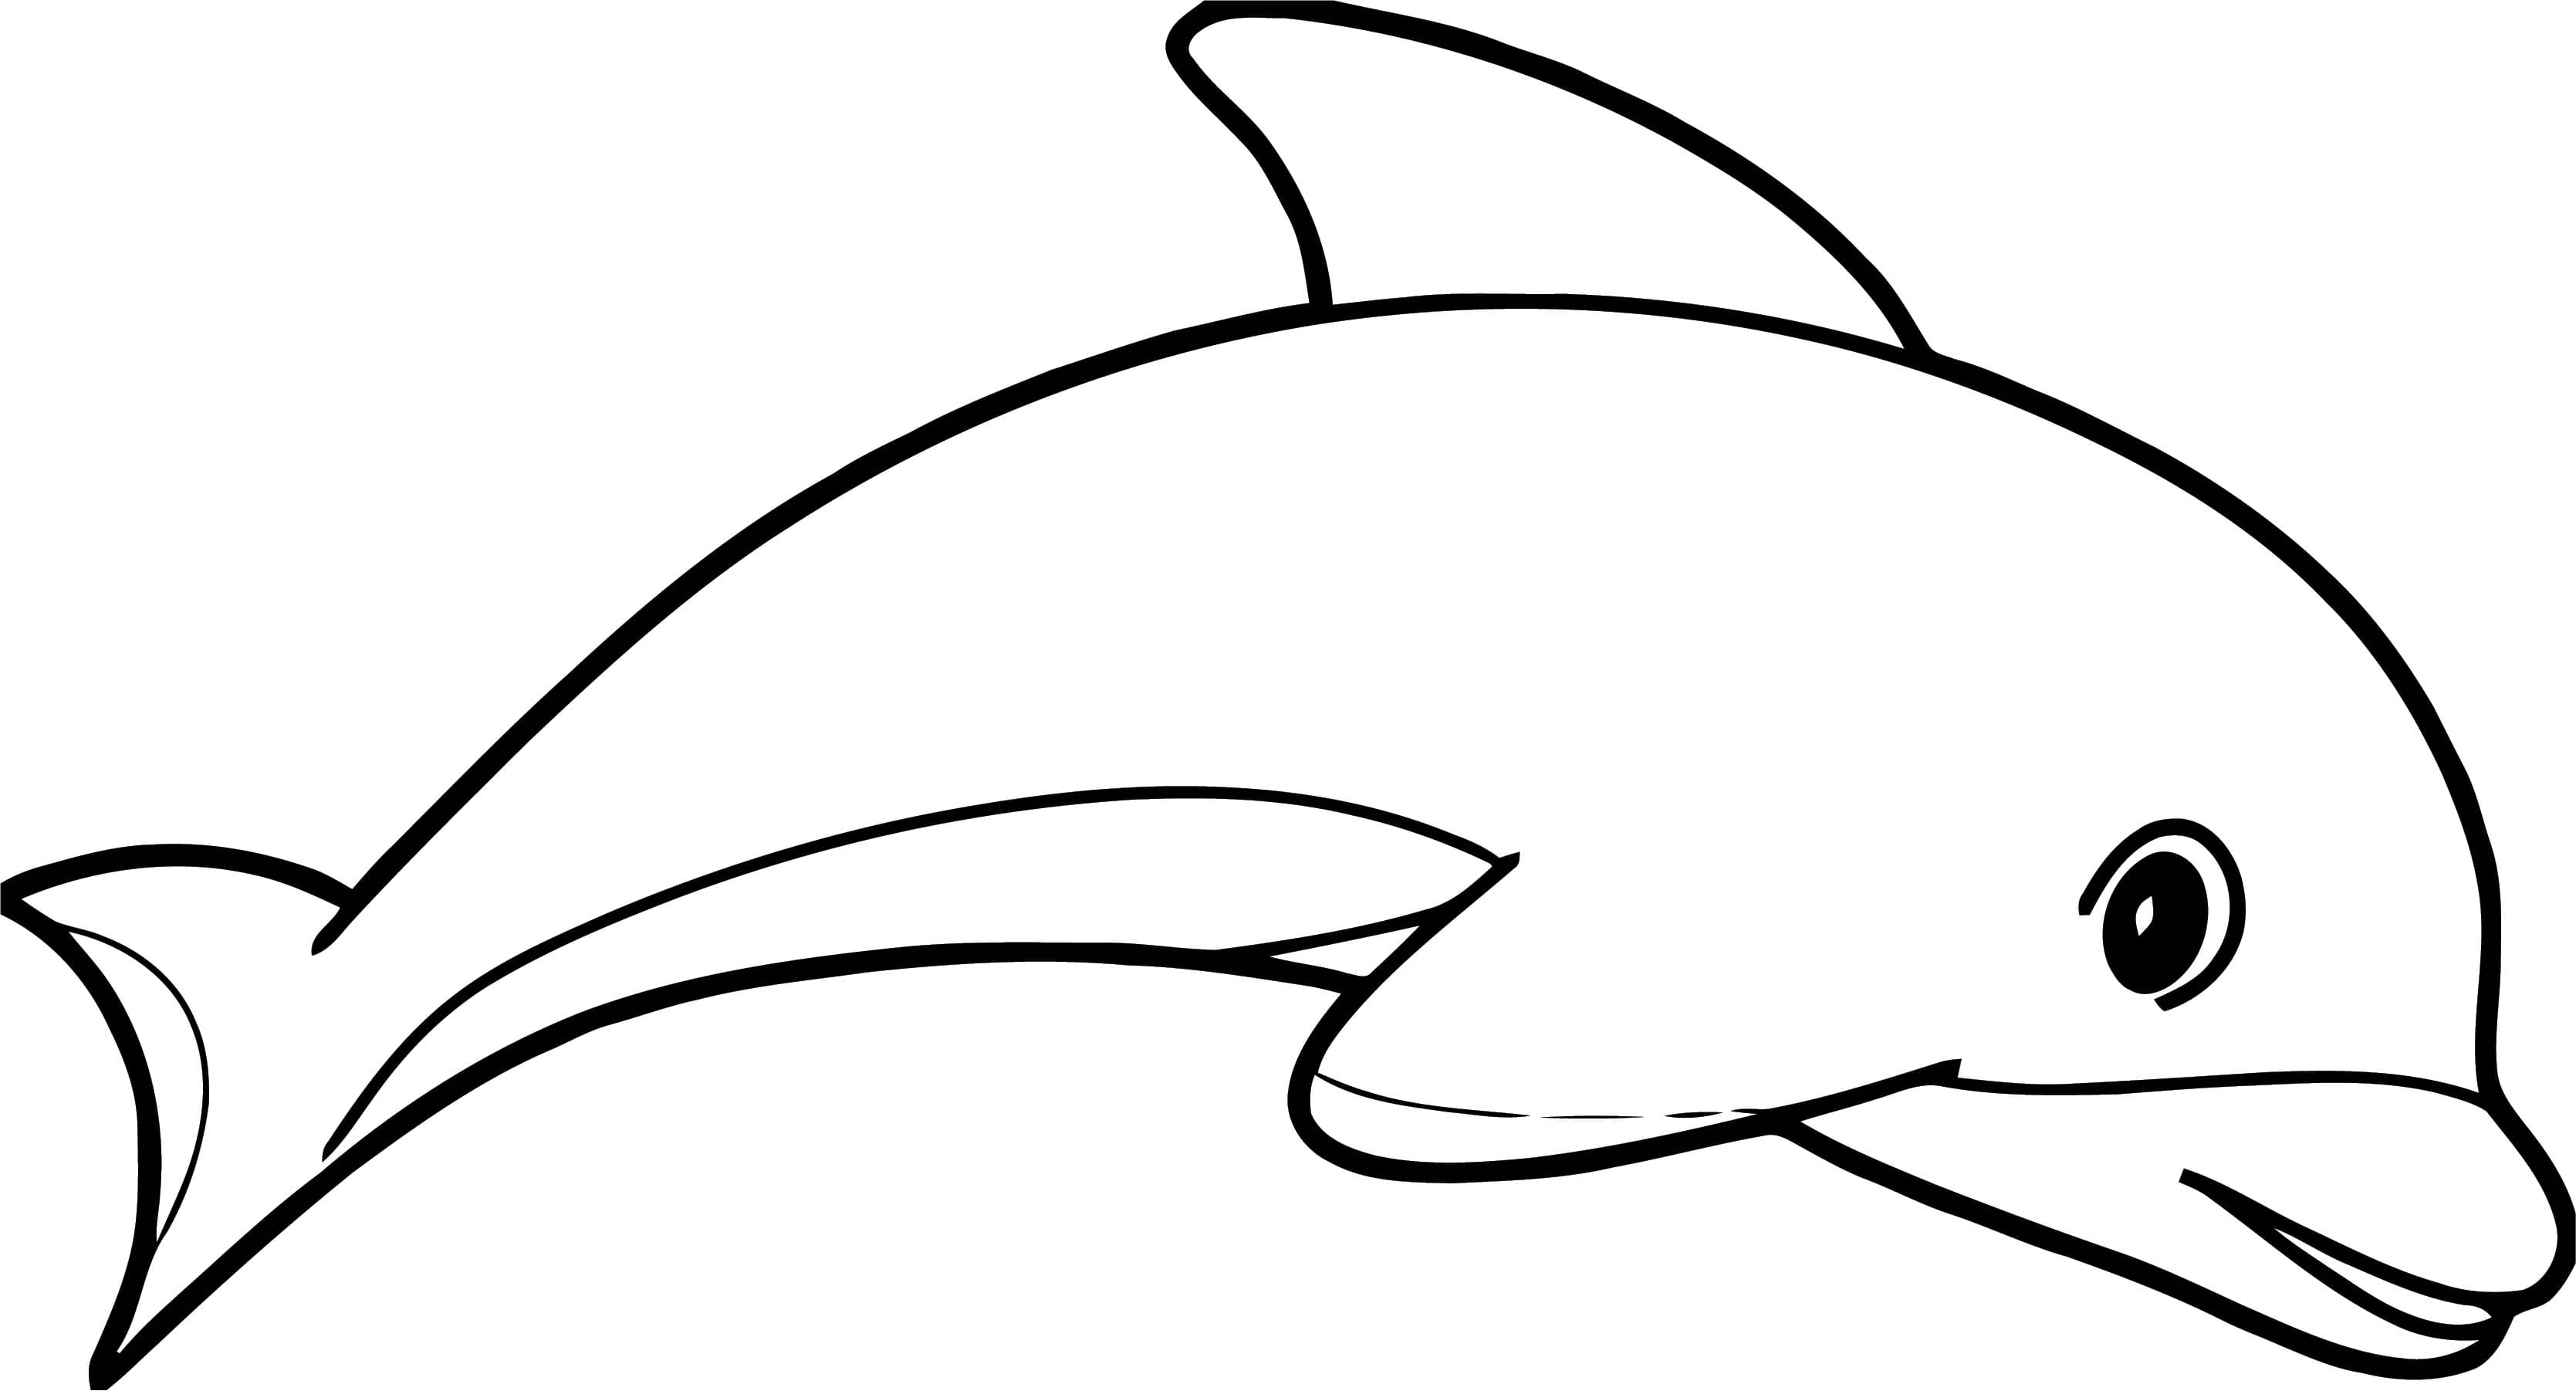 20+ malvorlage delfin zum ausdrucken top pinterest